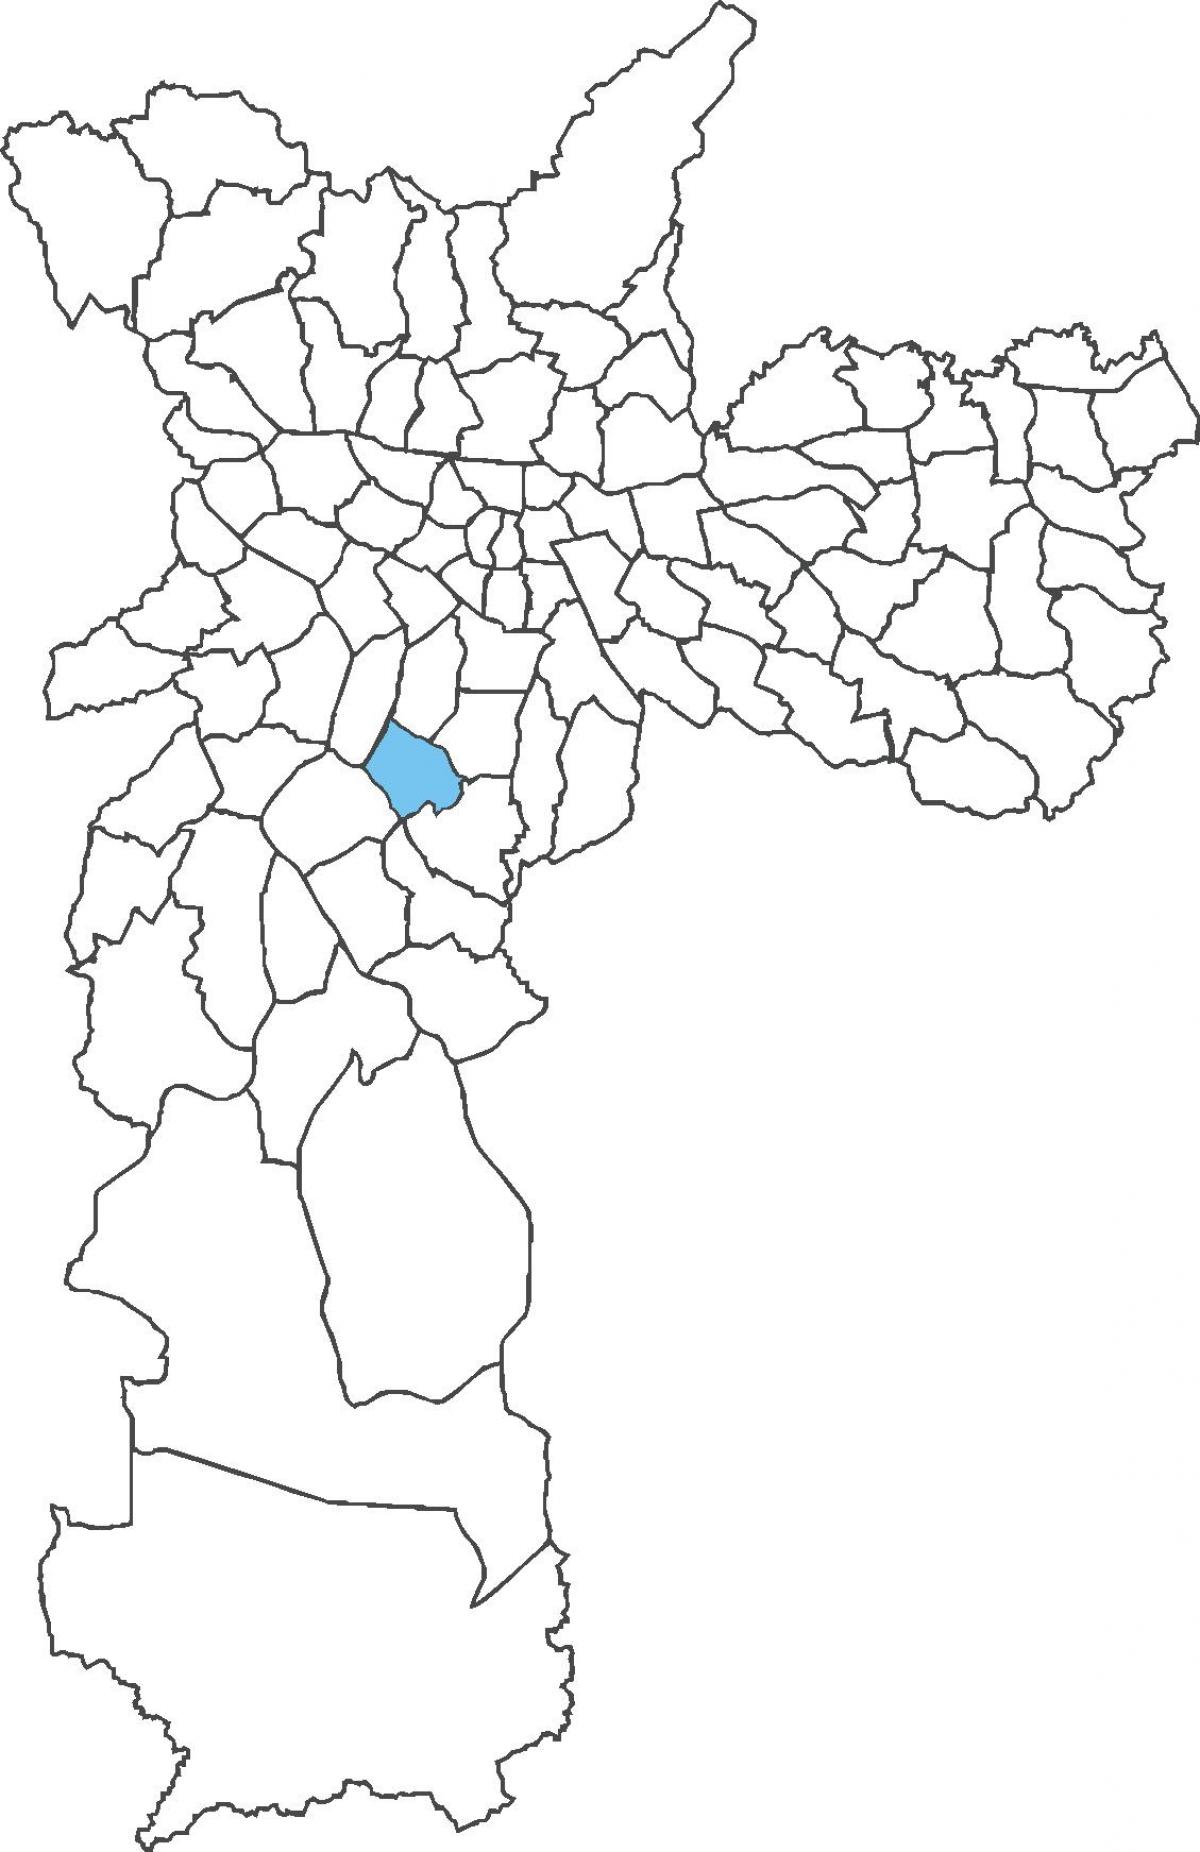 মানচিত্র এর ক্যাম্পো বেলো জেলা